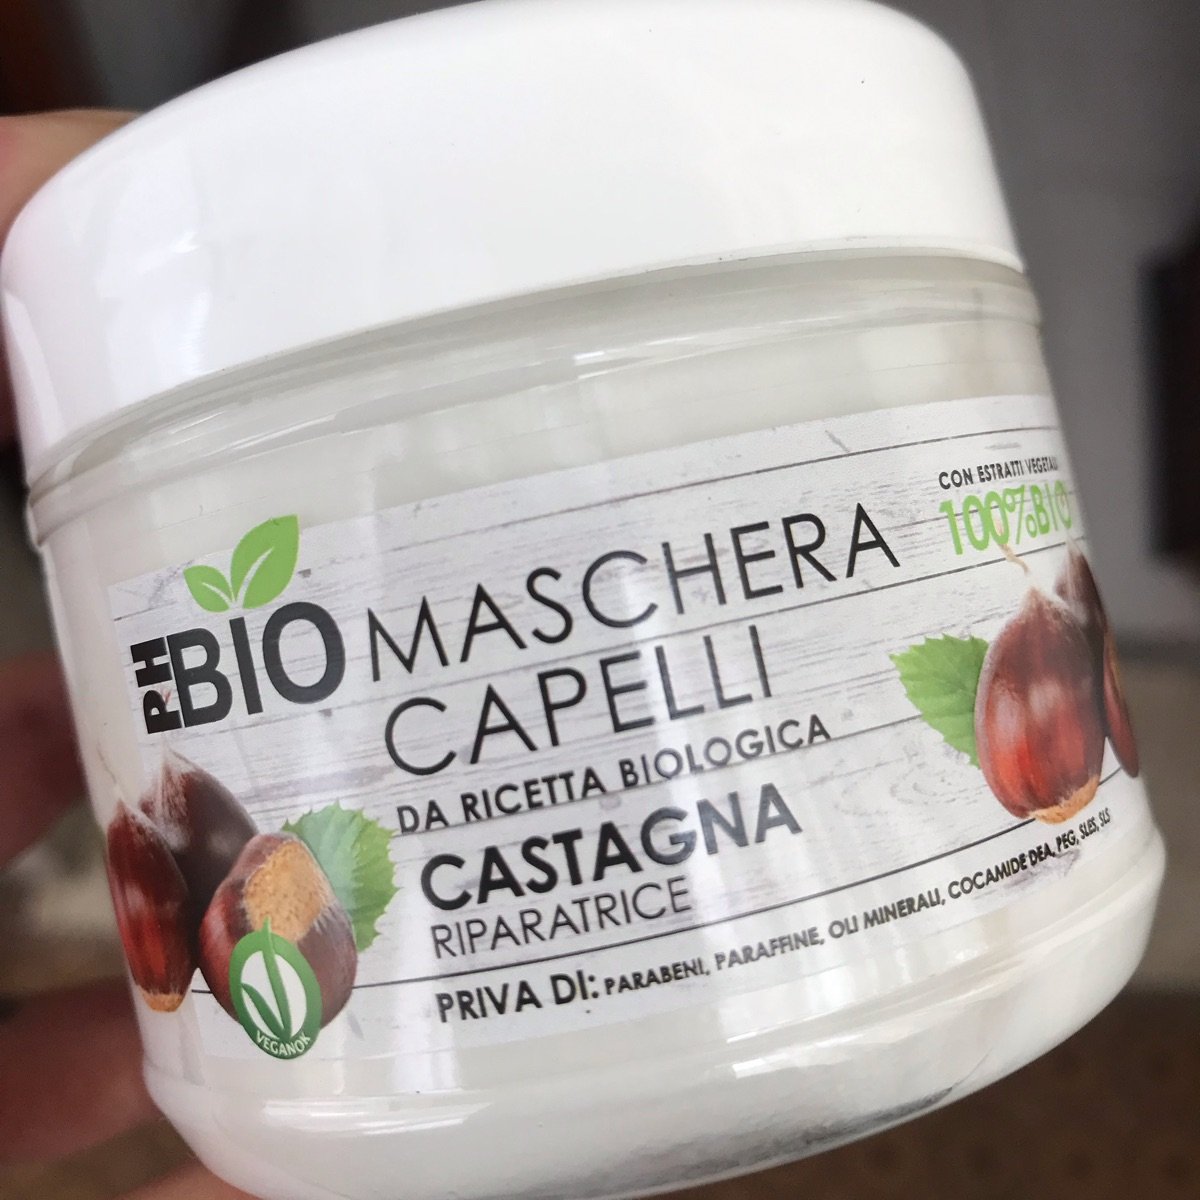 Phbio Maschera capelli castagna Review | abillion